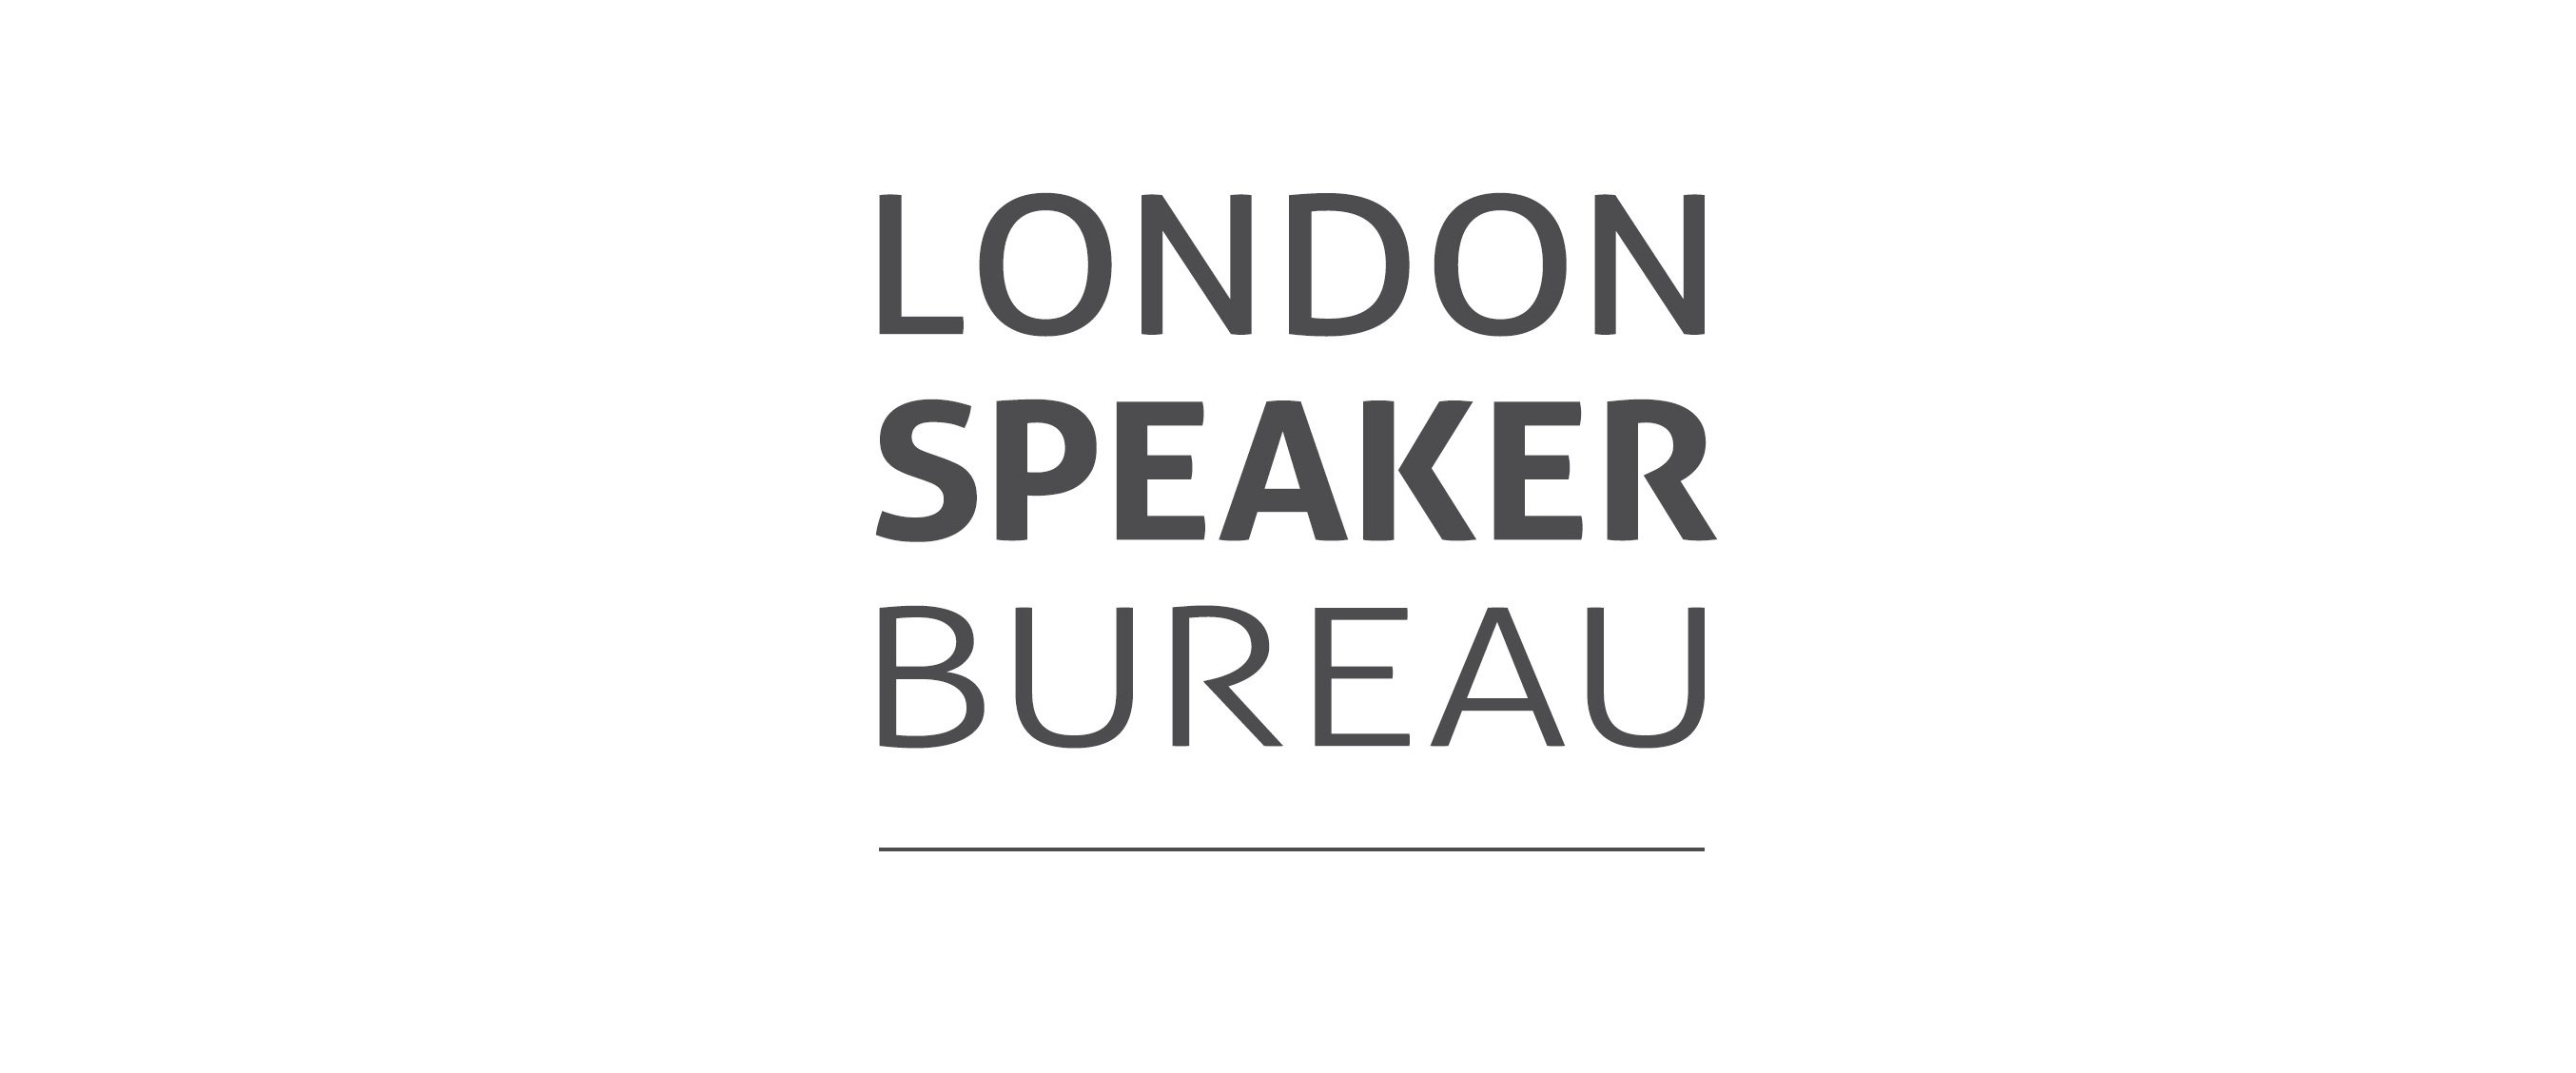 Dünyanın en büyük konuşmacı ve danışmanlık networkü olan London Speaker Bureau Türkiye Ofisi Resmi Twitter Hesabı